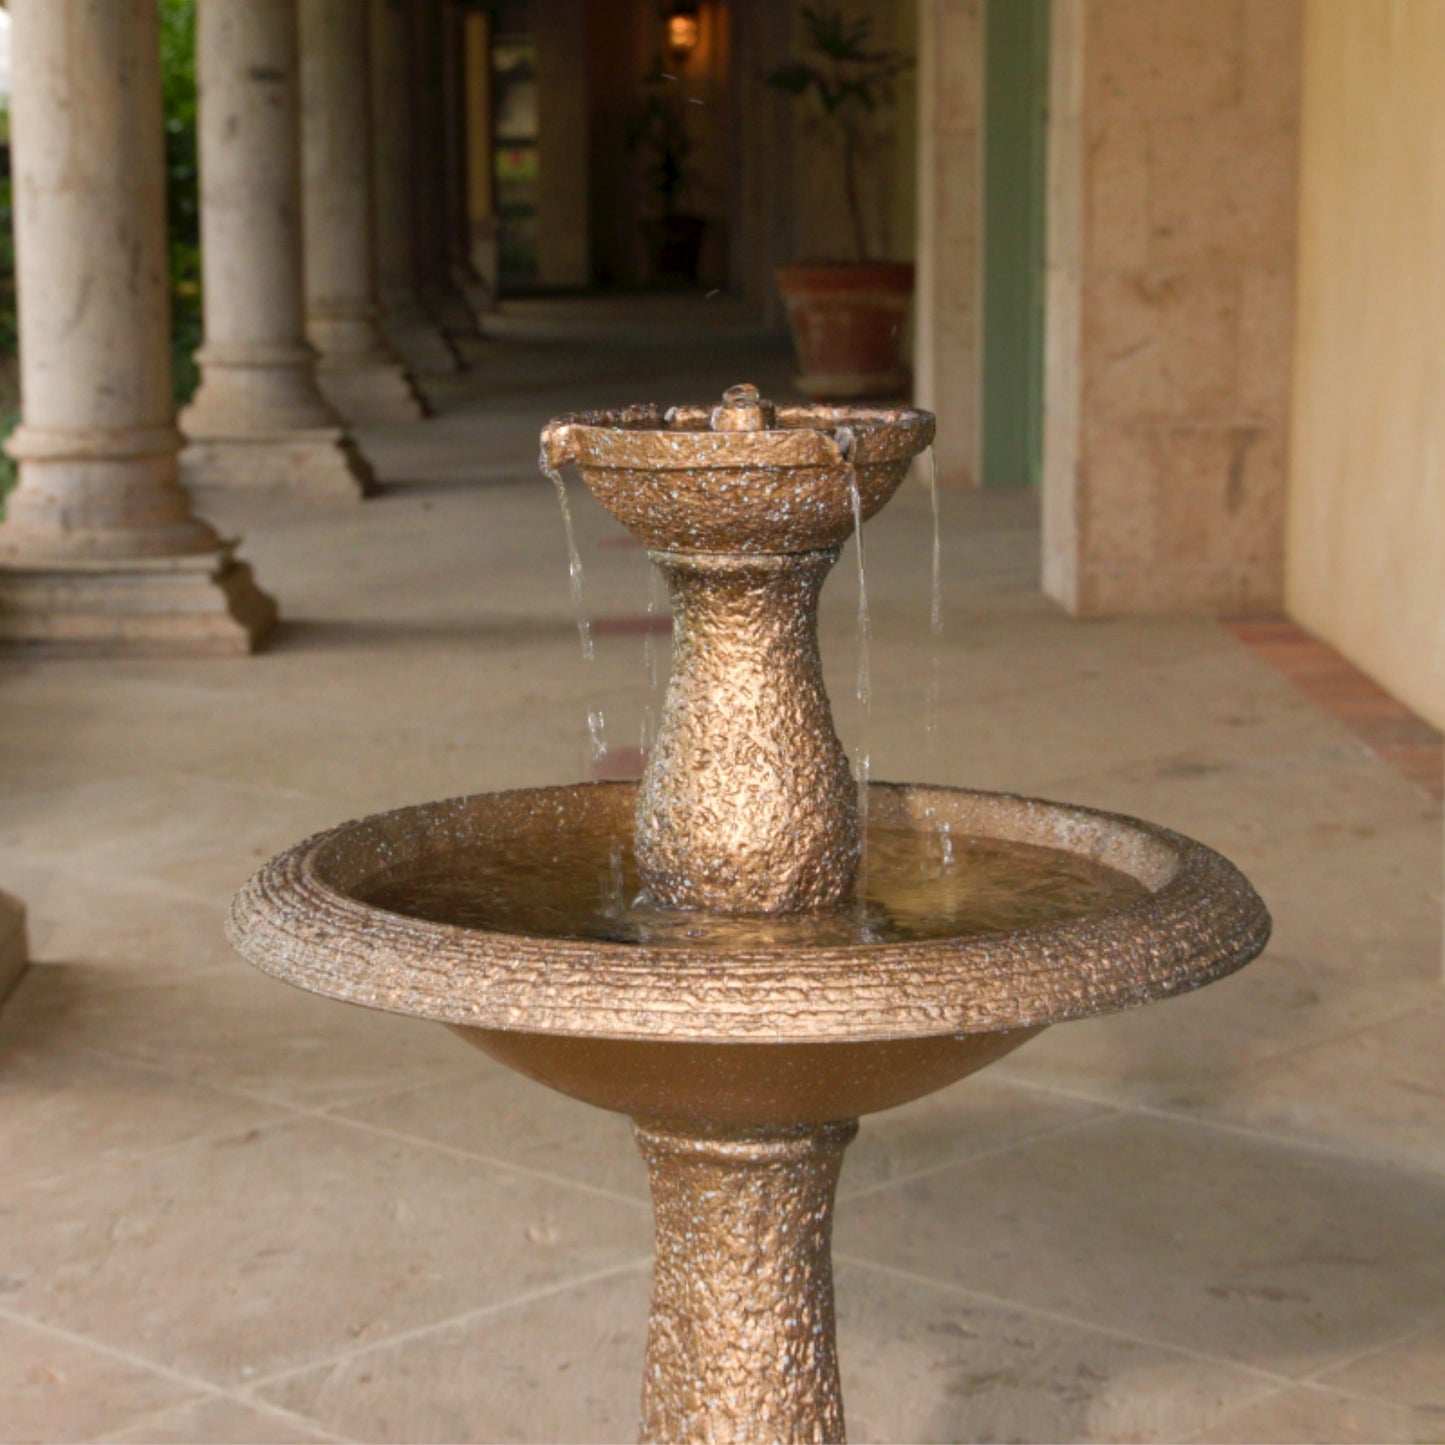 Ravenna Fountain